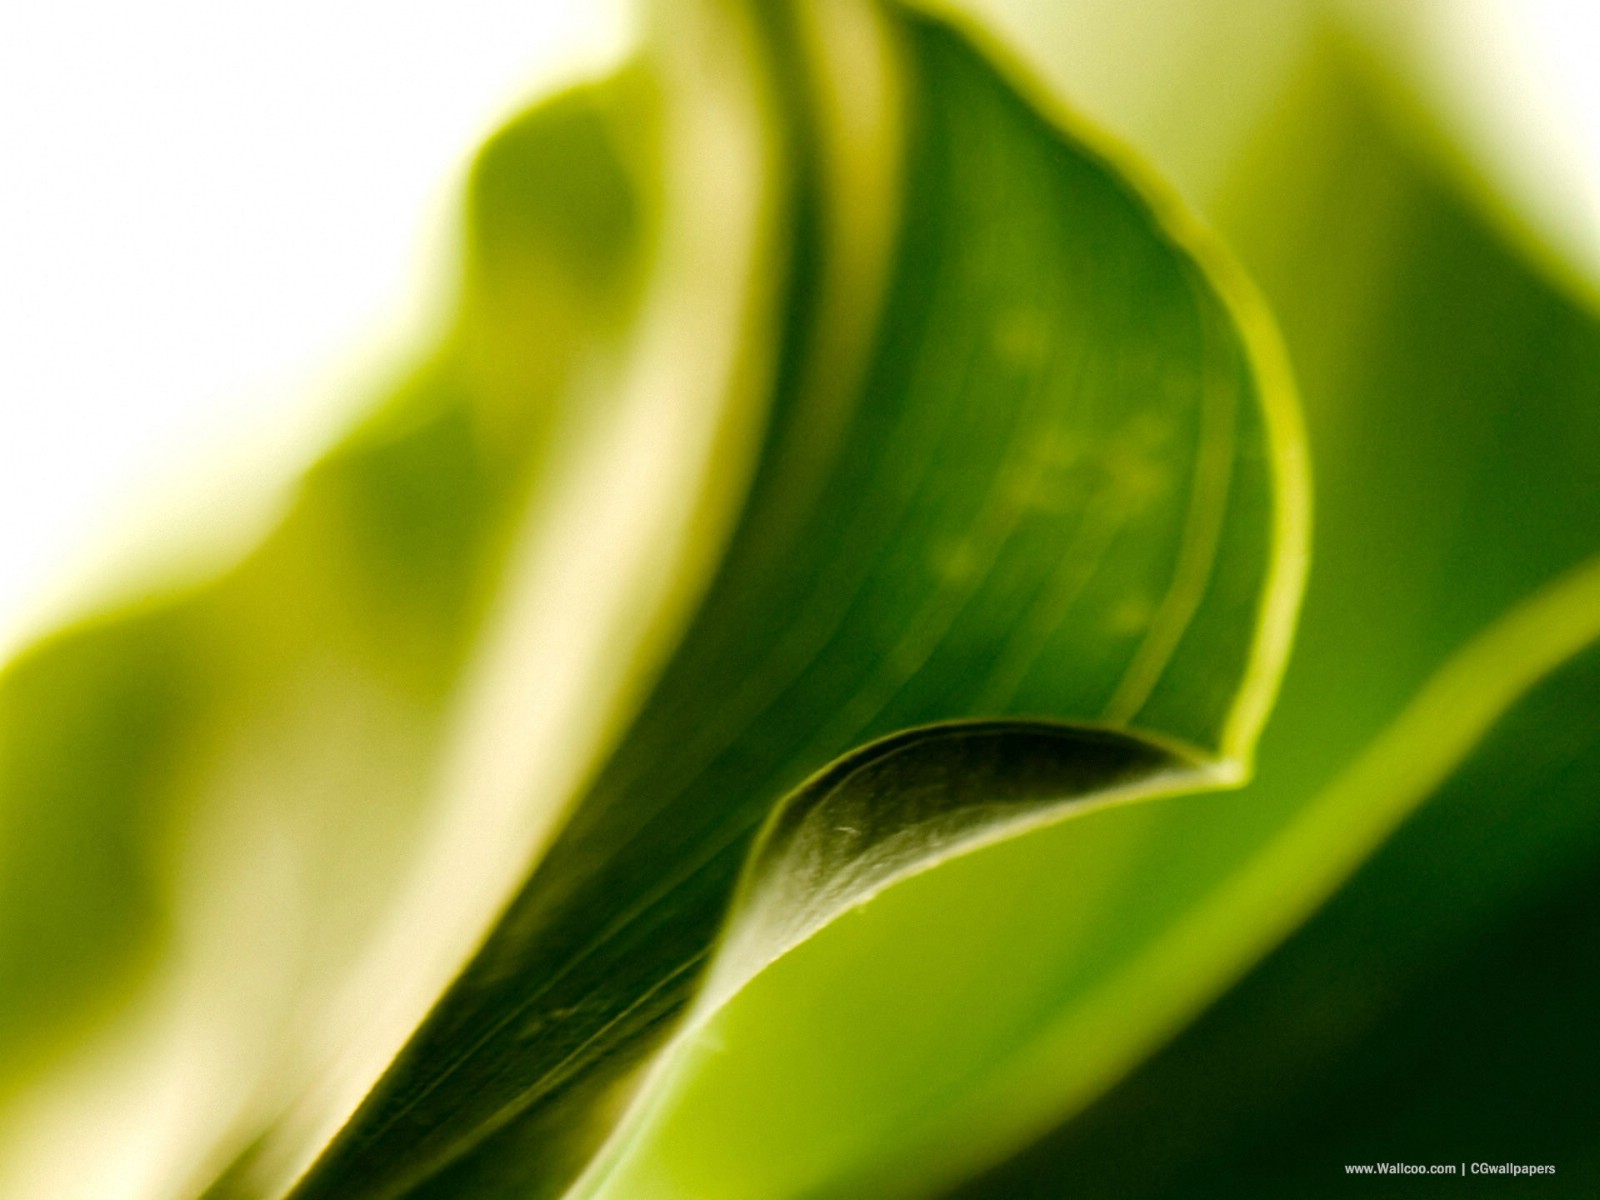 壁纸1600x1200高清晰植物绿叶壁纸 高清晰植物绿叶壁纸 高清晰植物绿叶图片 高清晰植物绿叶素材 植物壁纸 植物图库 植物图片素材桌面壁纸